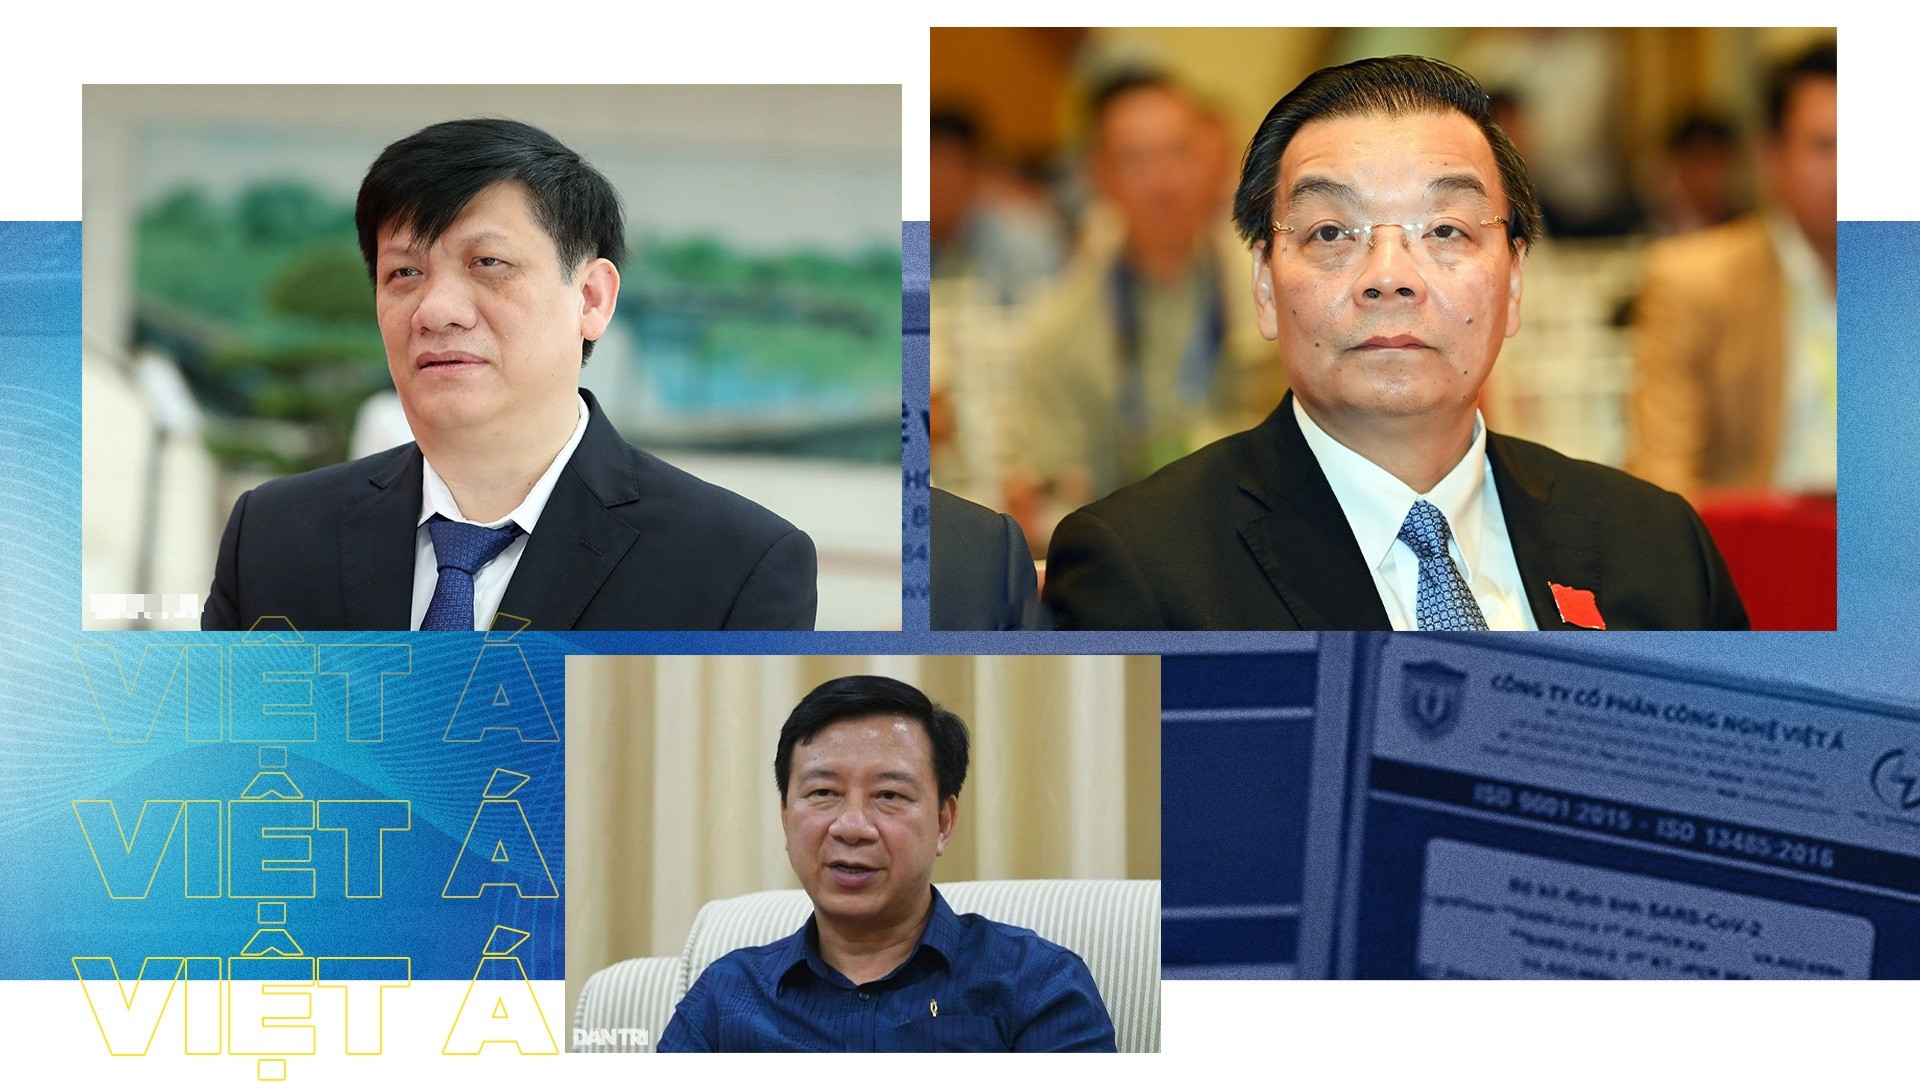 Phó Trưởng Ban Nội chính Trung ương: Có nhóm được miễn truy cứu trách nhiệm hình sự trong vụ Việt Á - Ảnh 1.